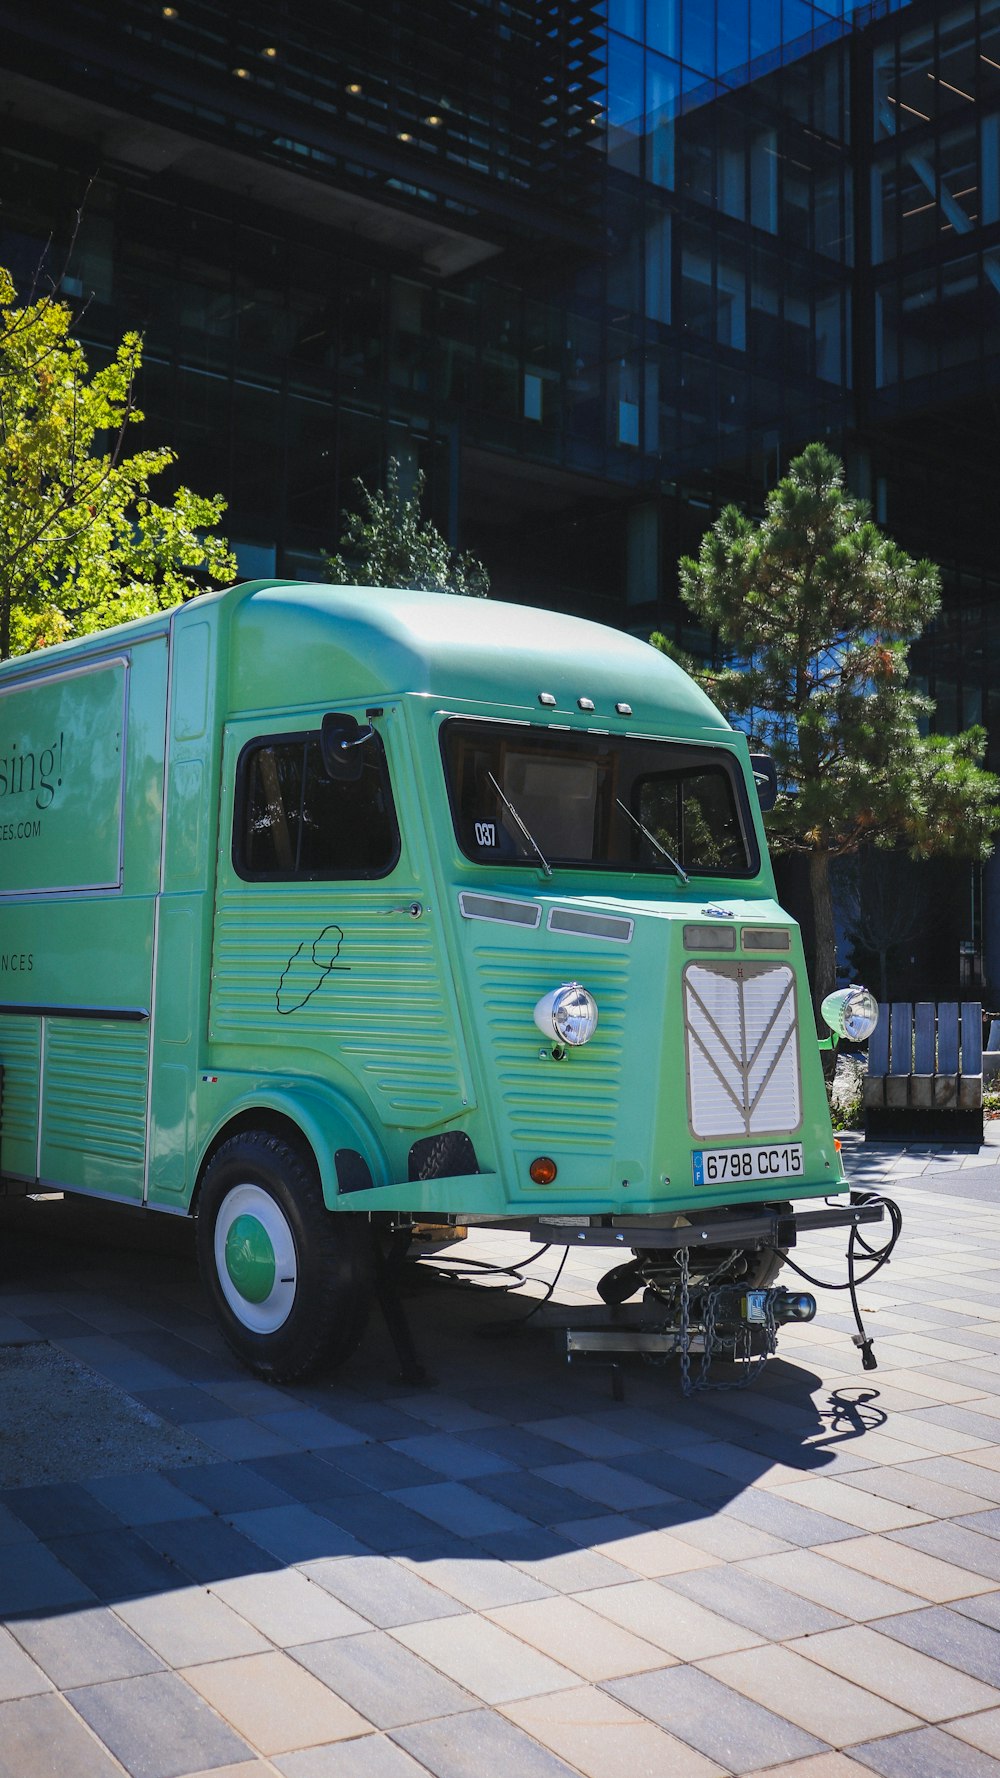 Un camion di cibo verde parcheggiato sul lato della strada